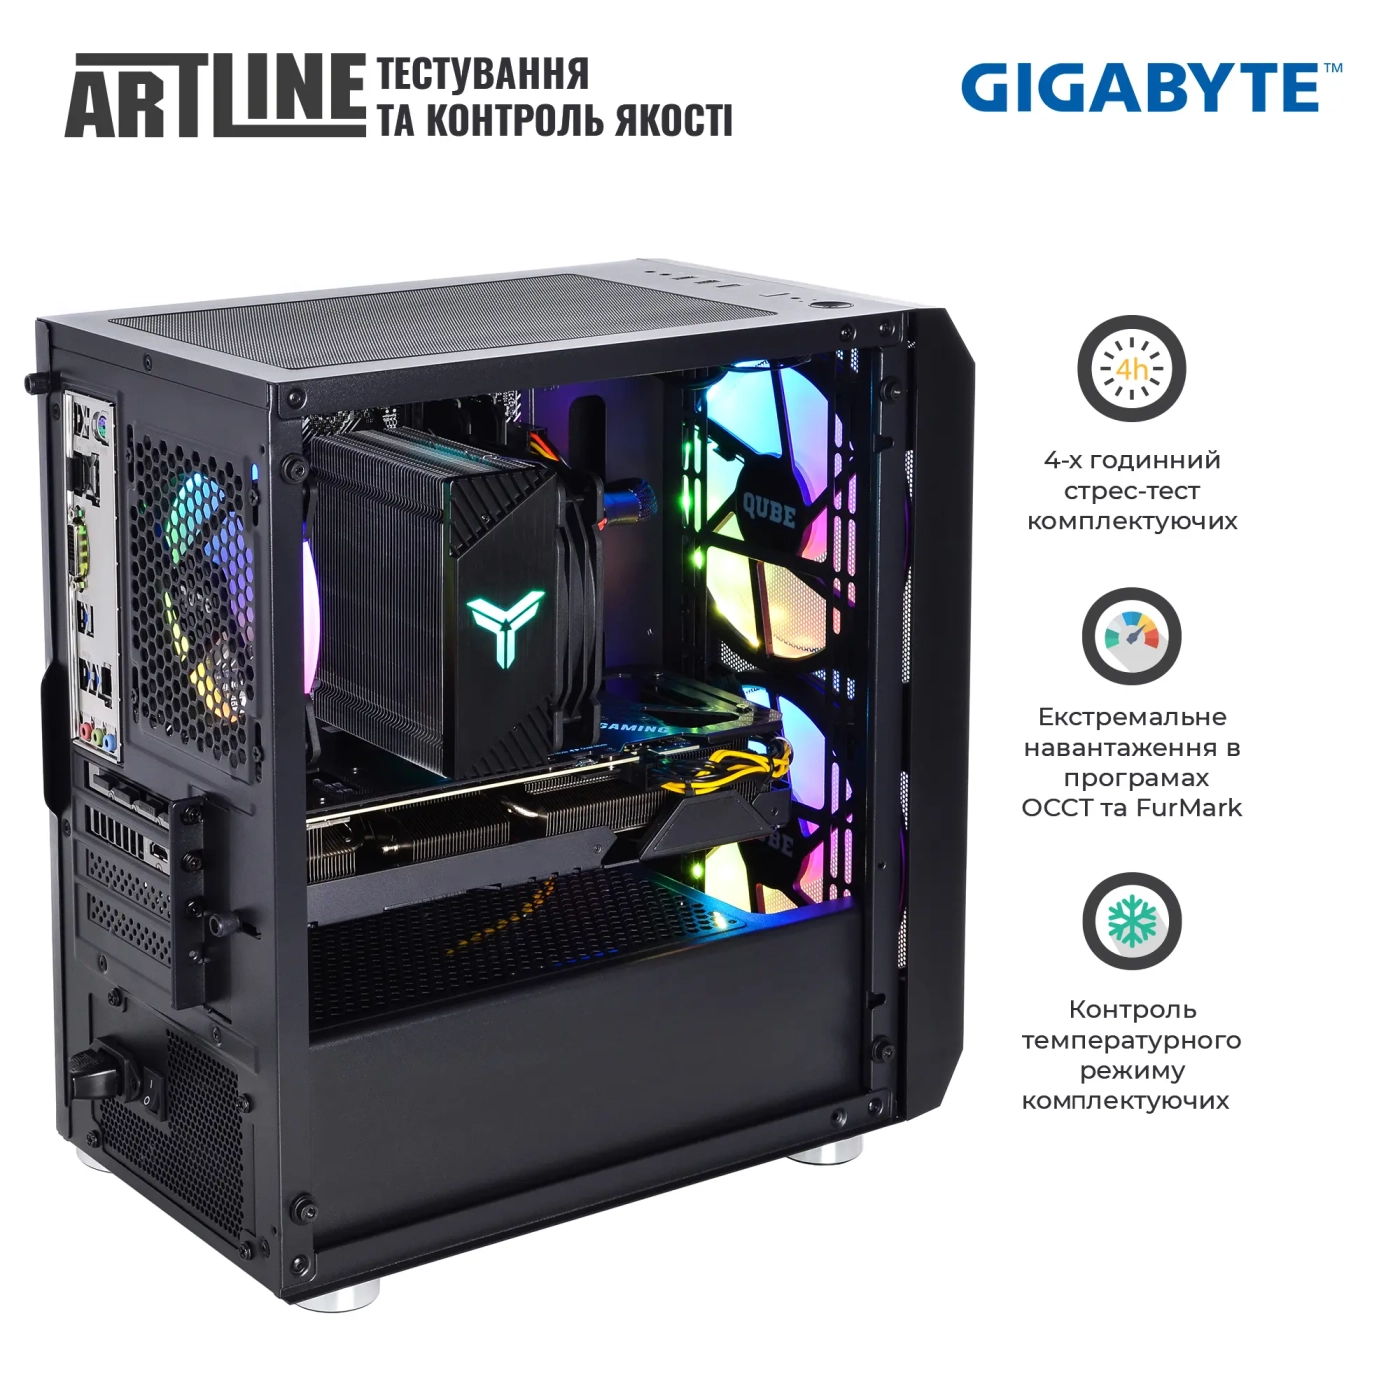 Купить Компьютер ARTLINE Gaming X66v35GGB GIGABYTE Special Edition (X66v35GGB) - фото 9